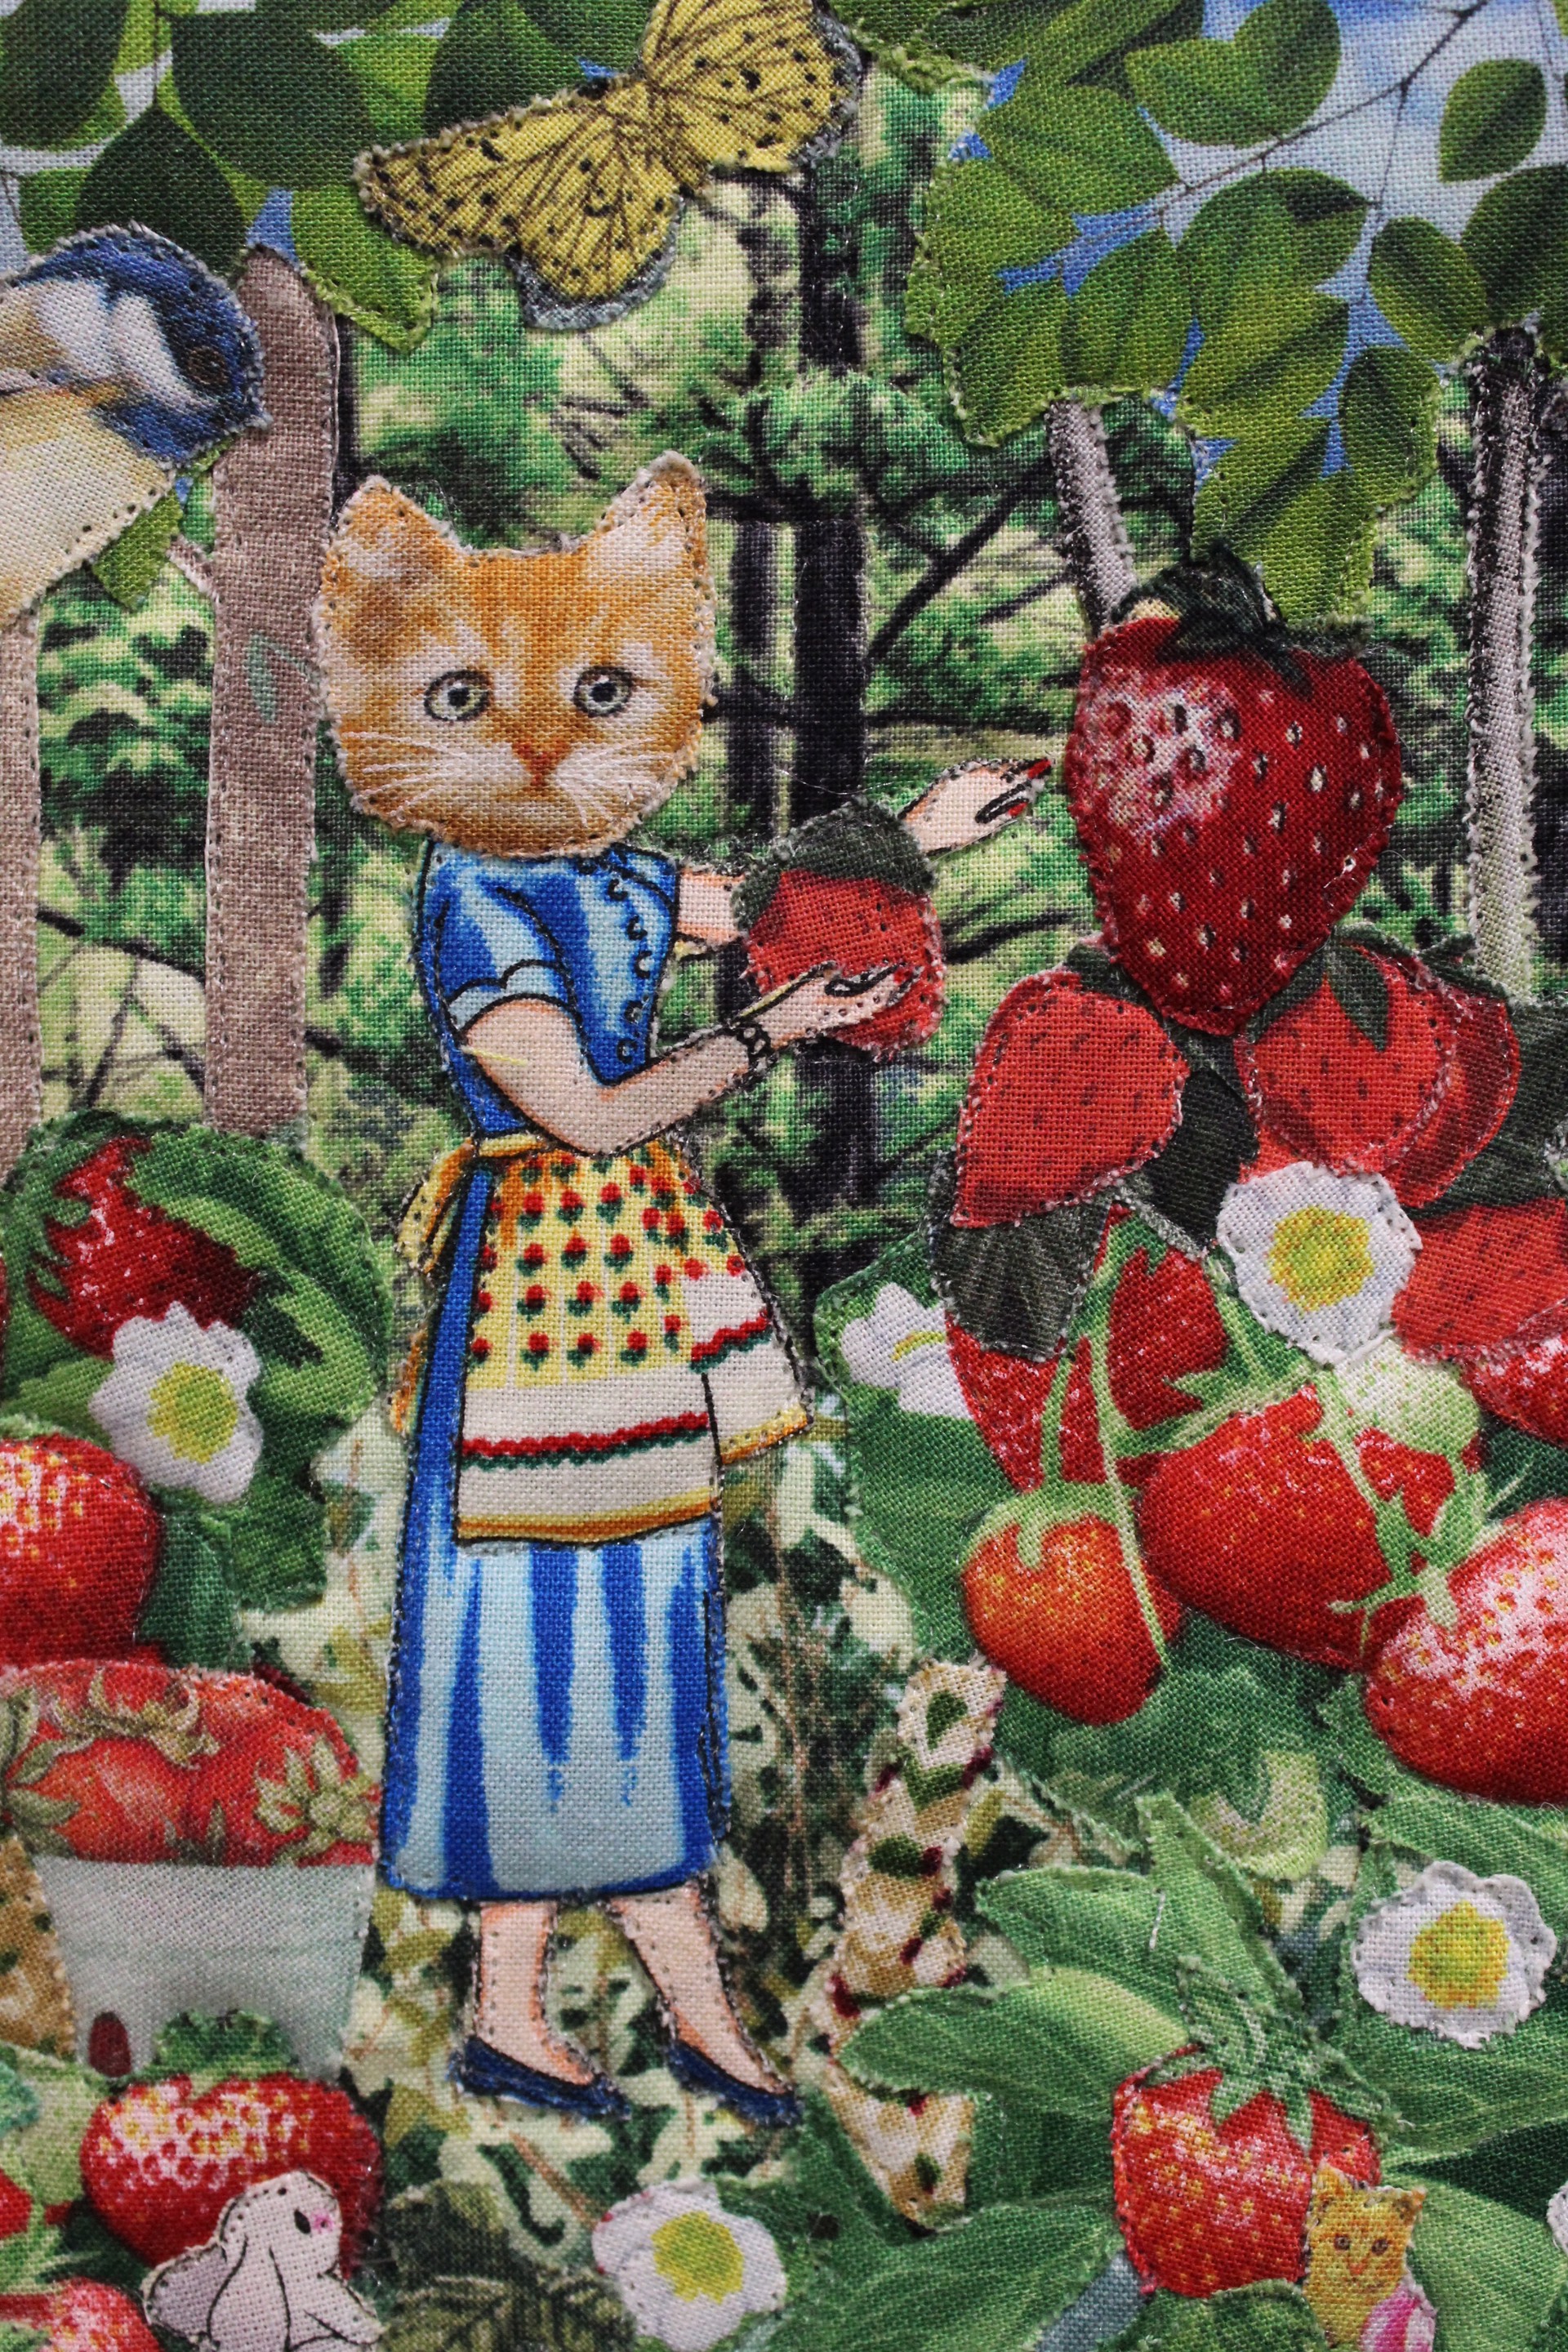 Strawberry Catgirlfriends by Jane Tardo